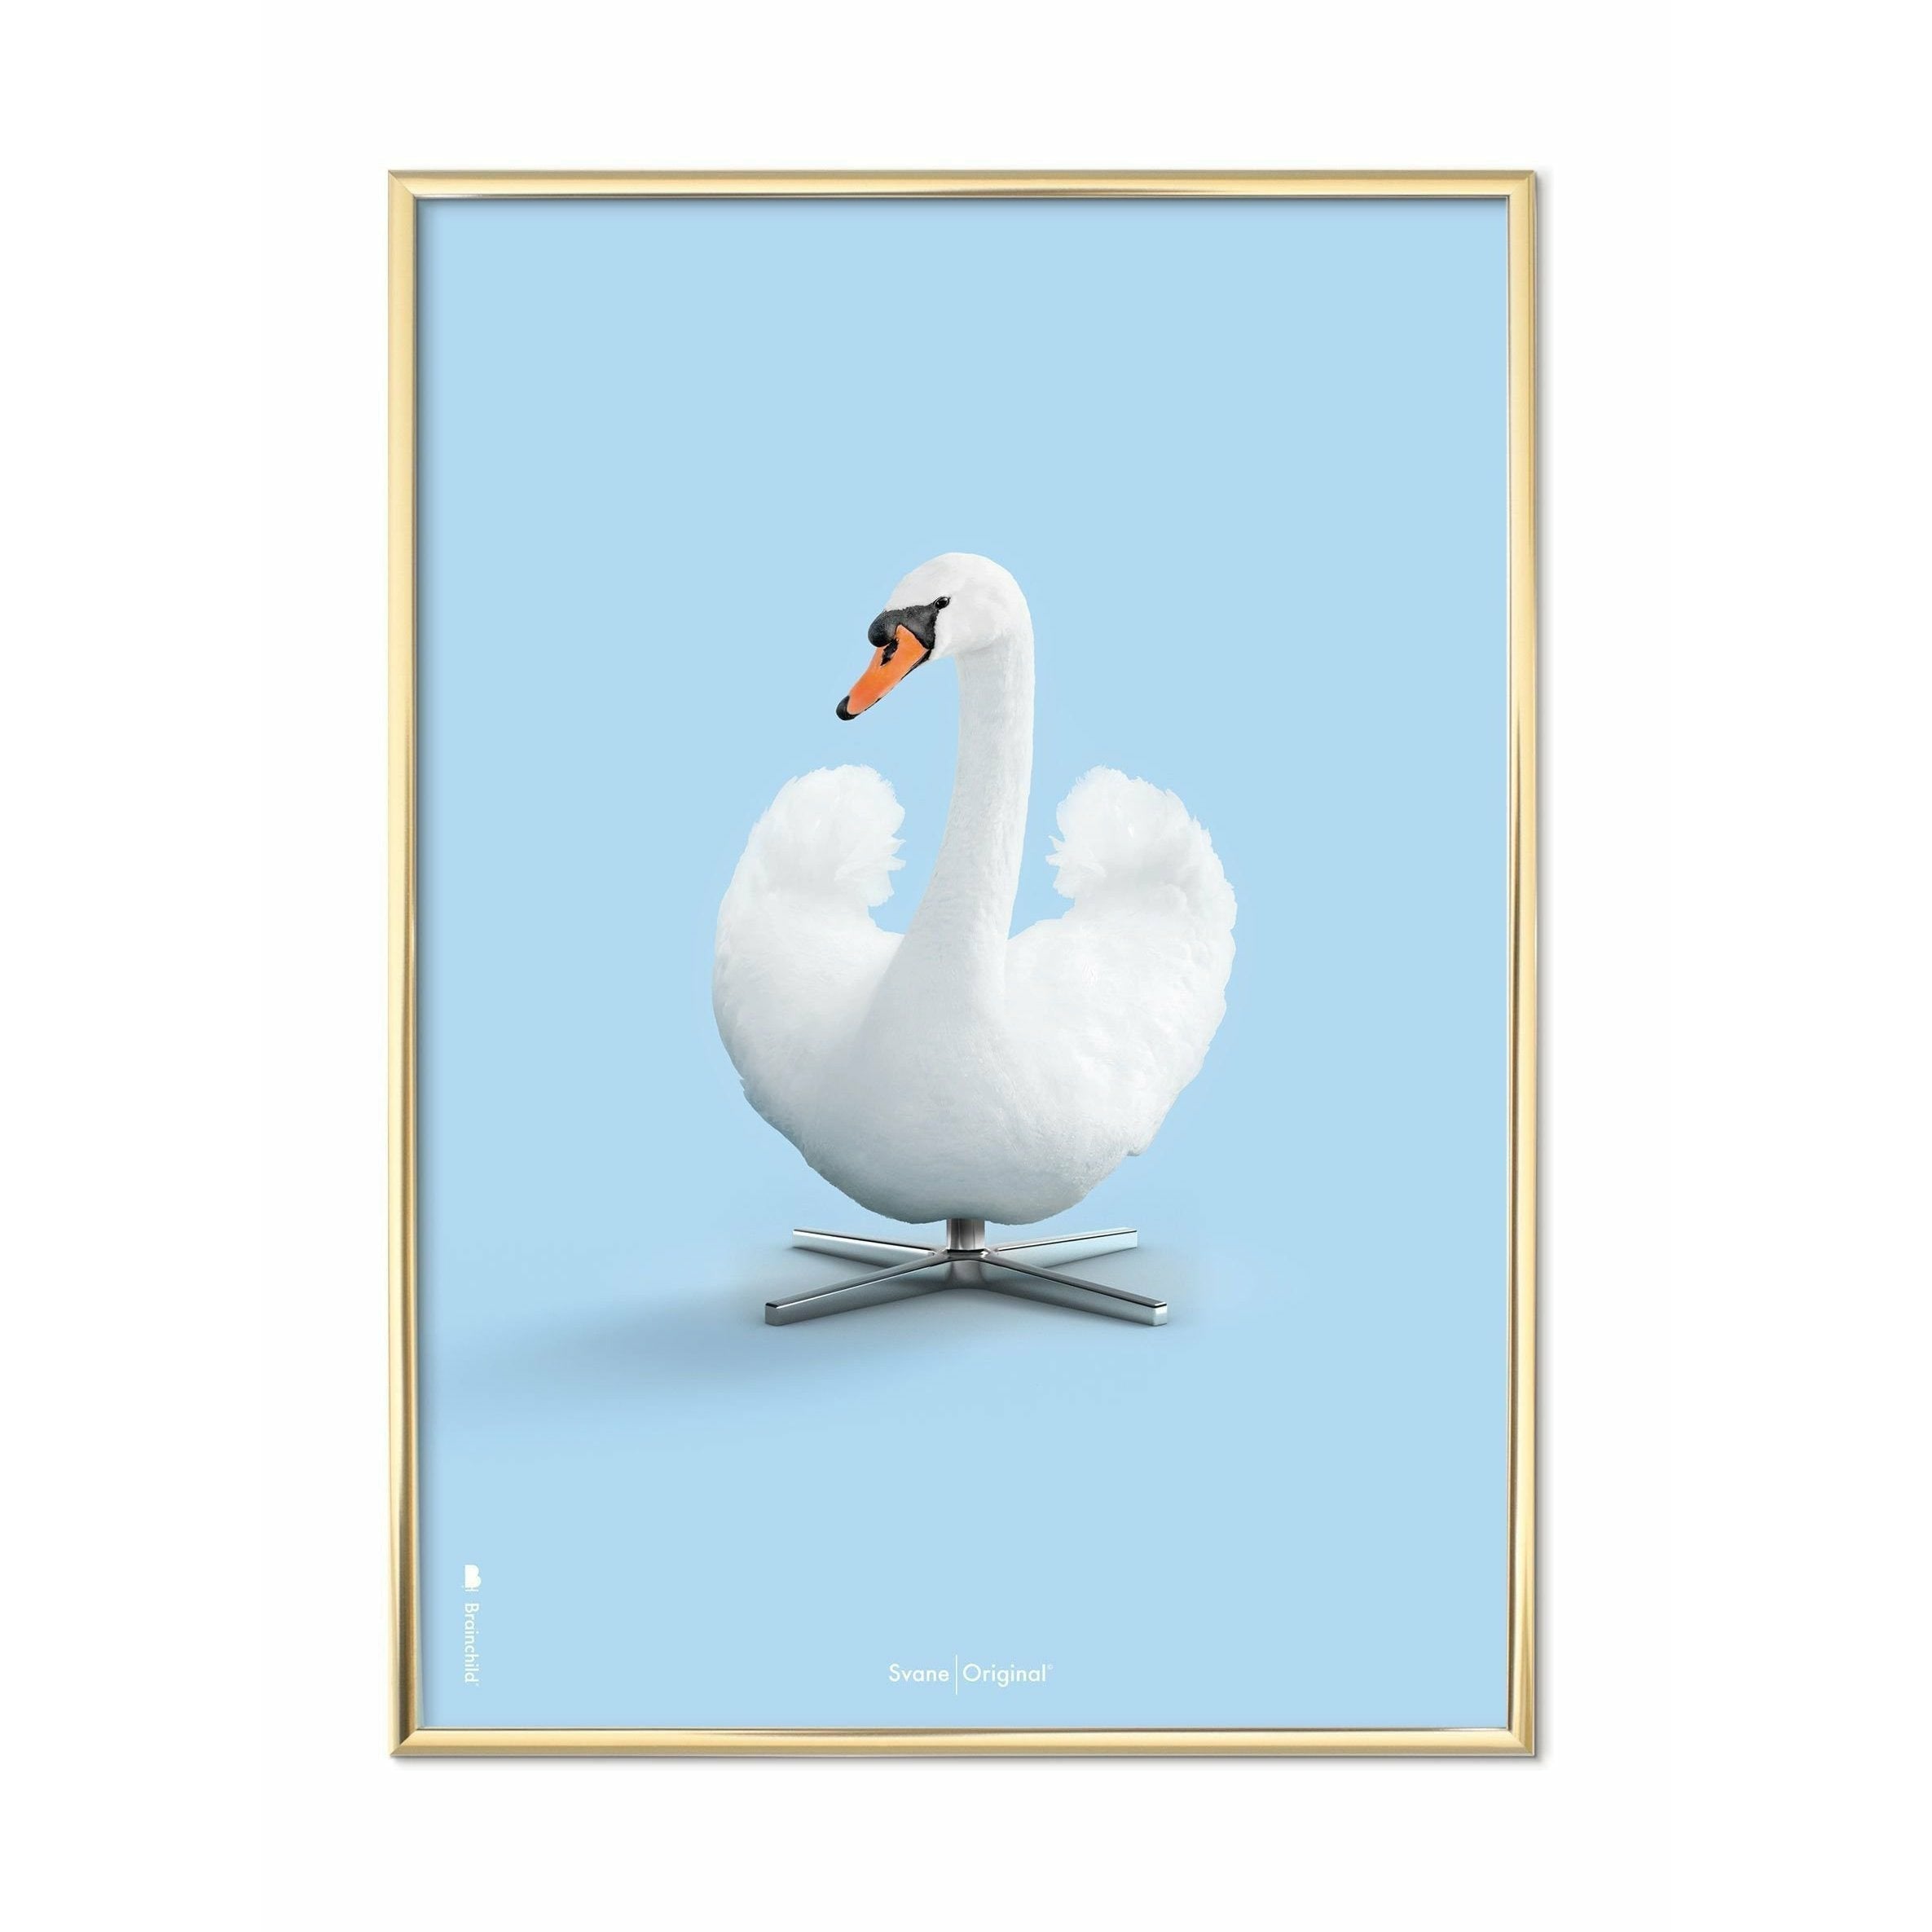 brainchild Swan Classic juliste, messinkivärinen runko 30x40 cm, vaaleansininen tausta